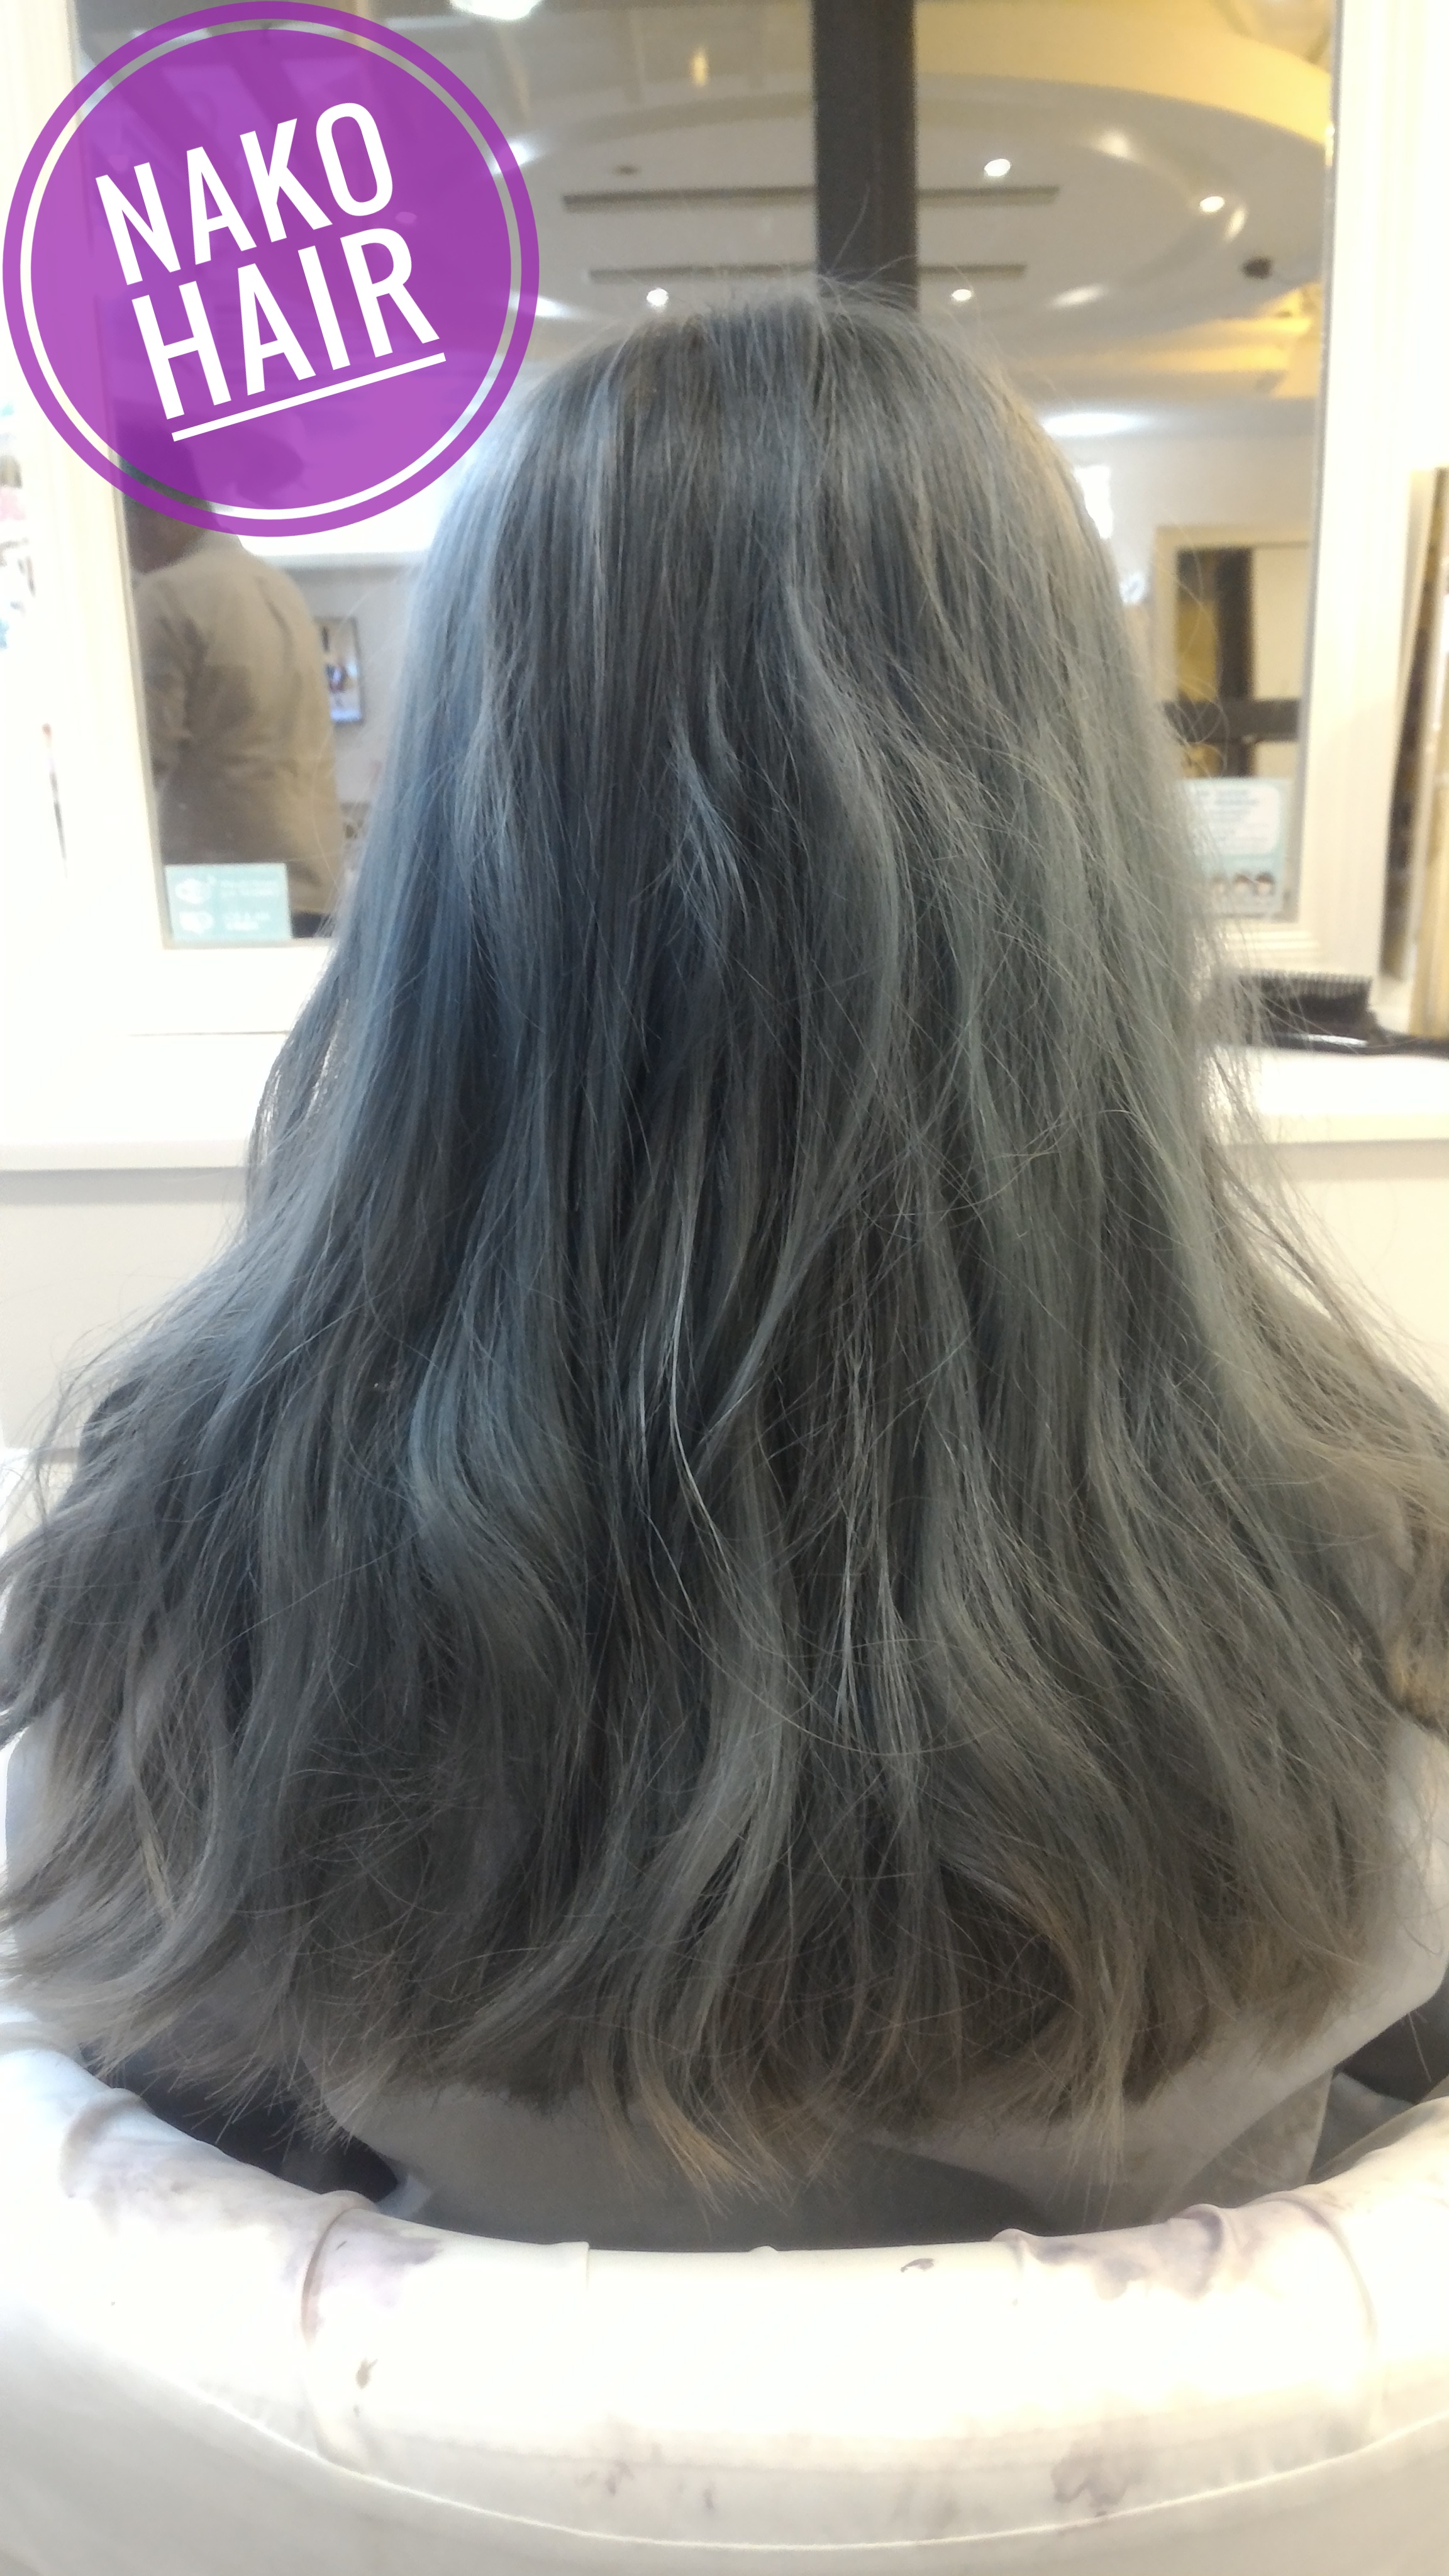 作品參考 / 最新消息:日本風(長度)髮型(灰色)